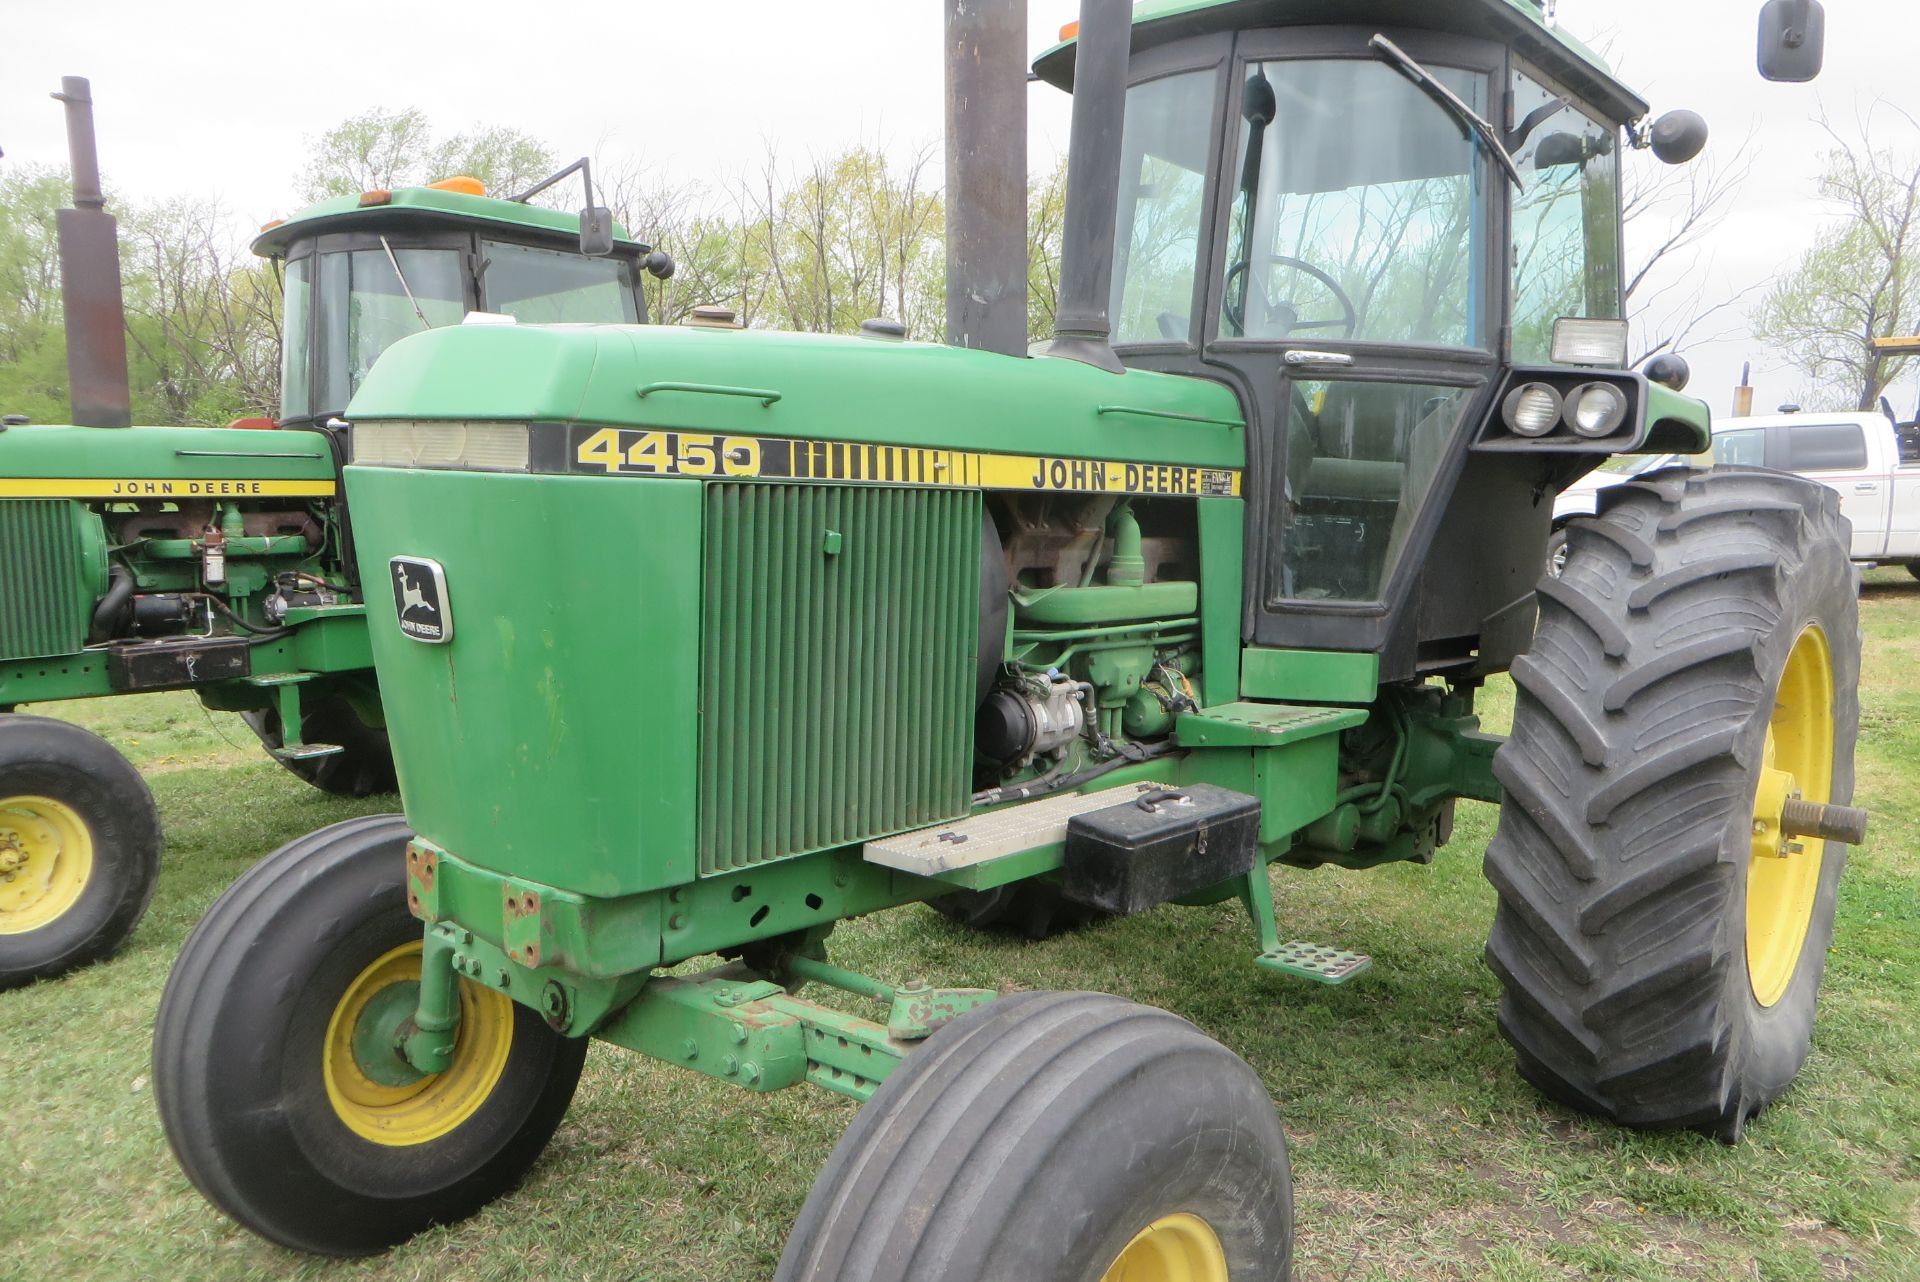 1983 John Deere 4450 tractor - Image 2 of 5